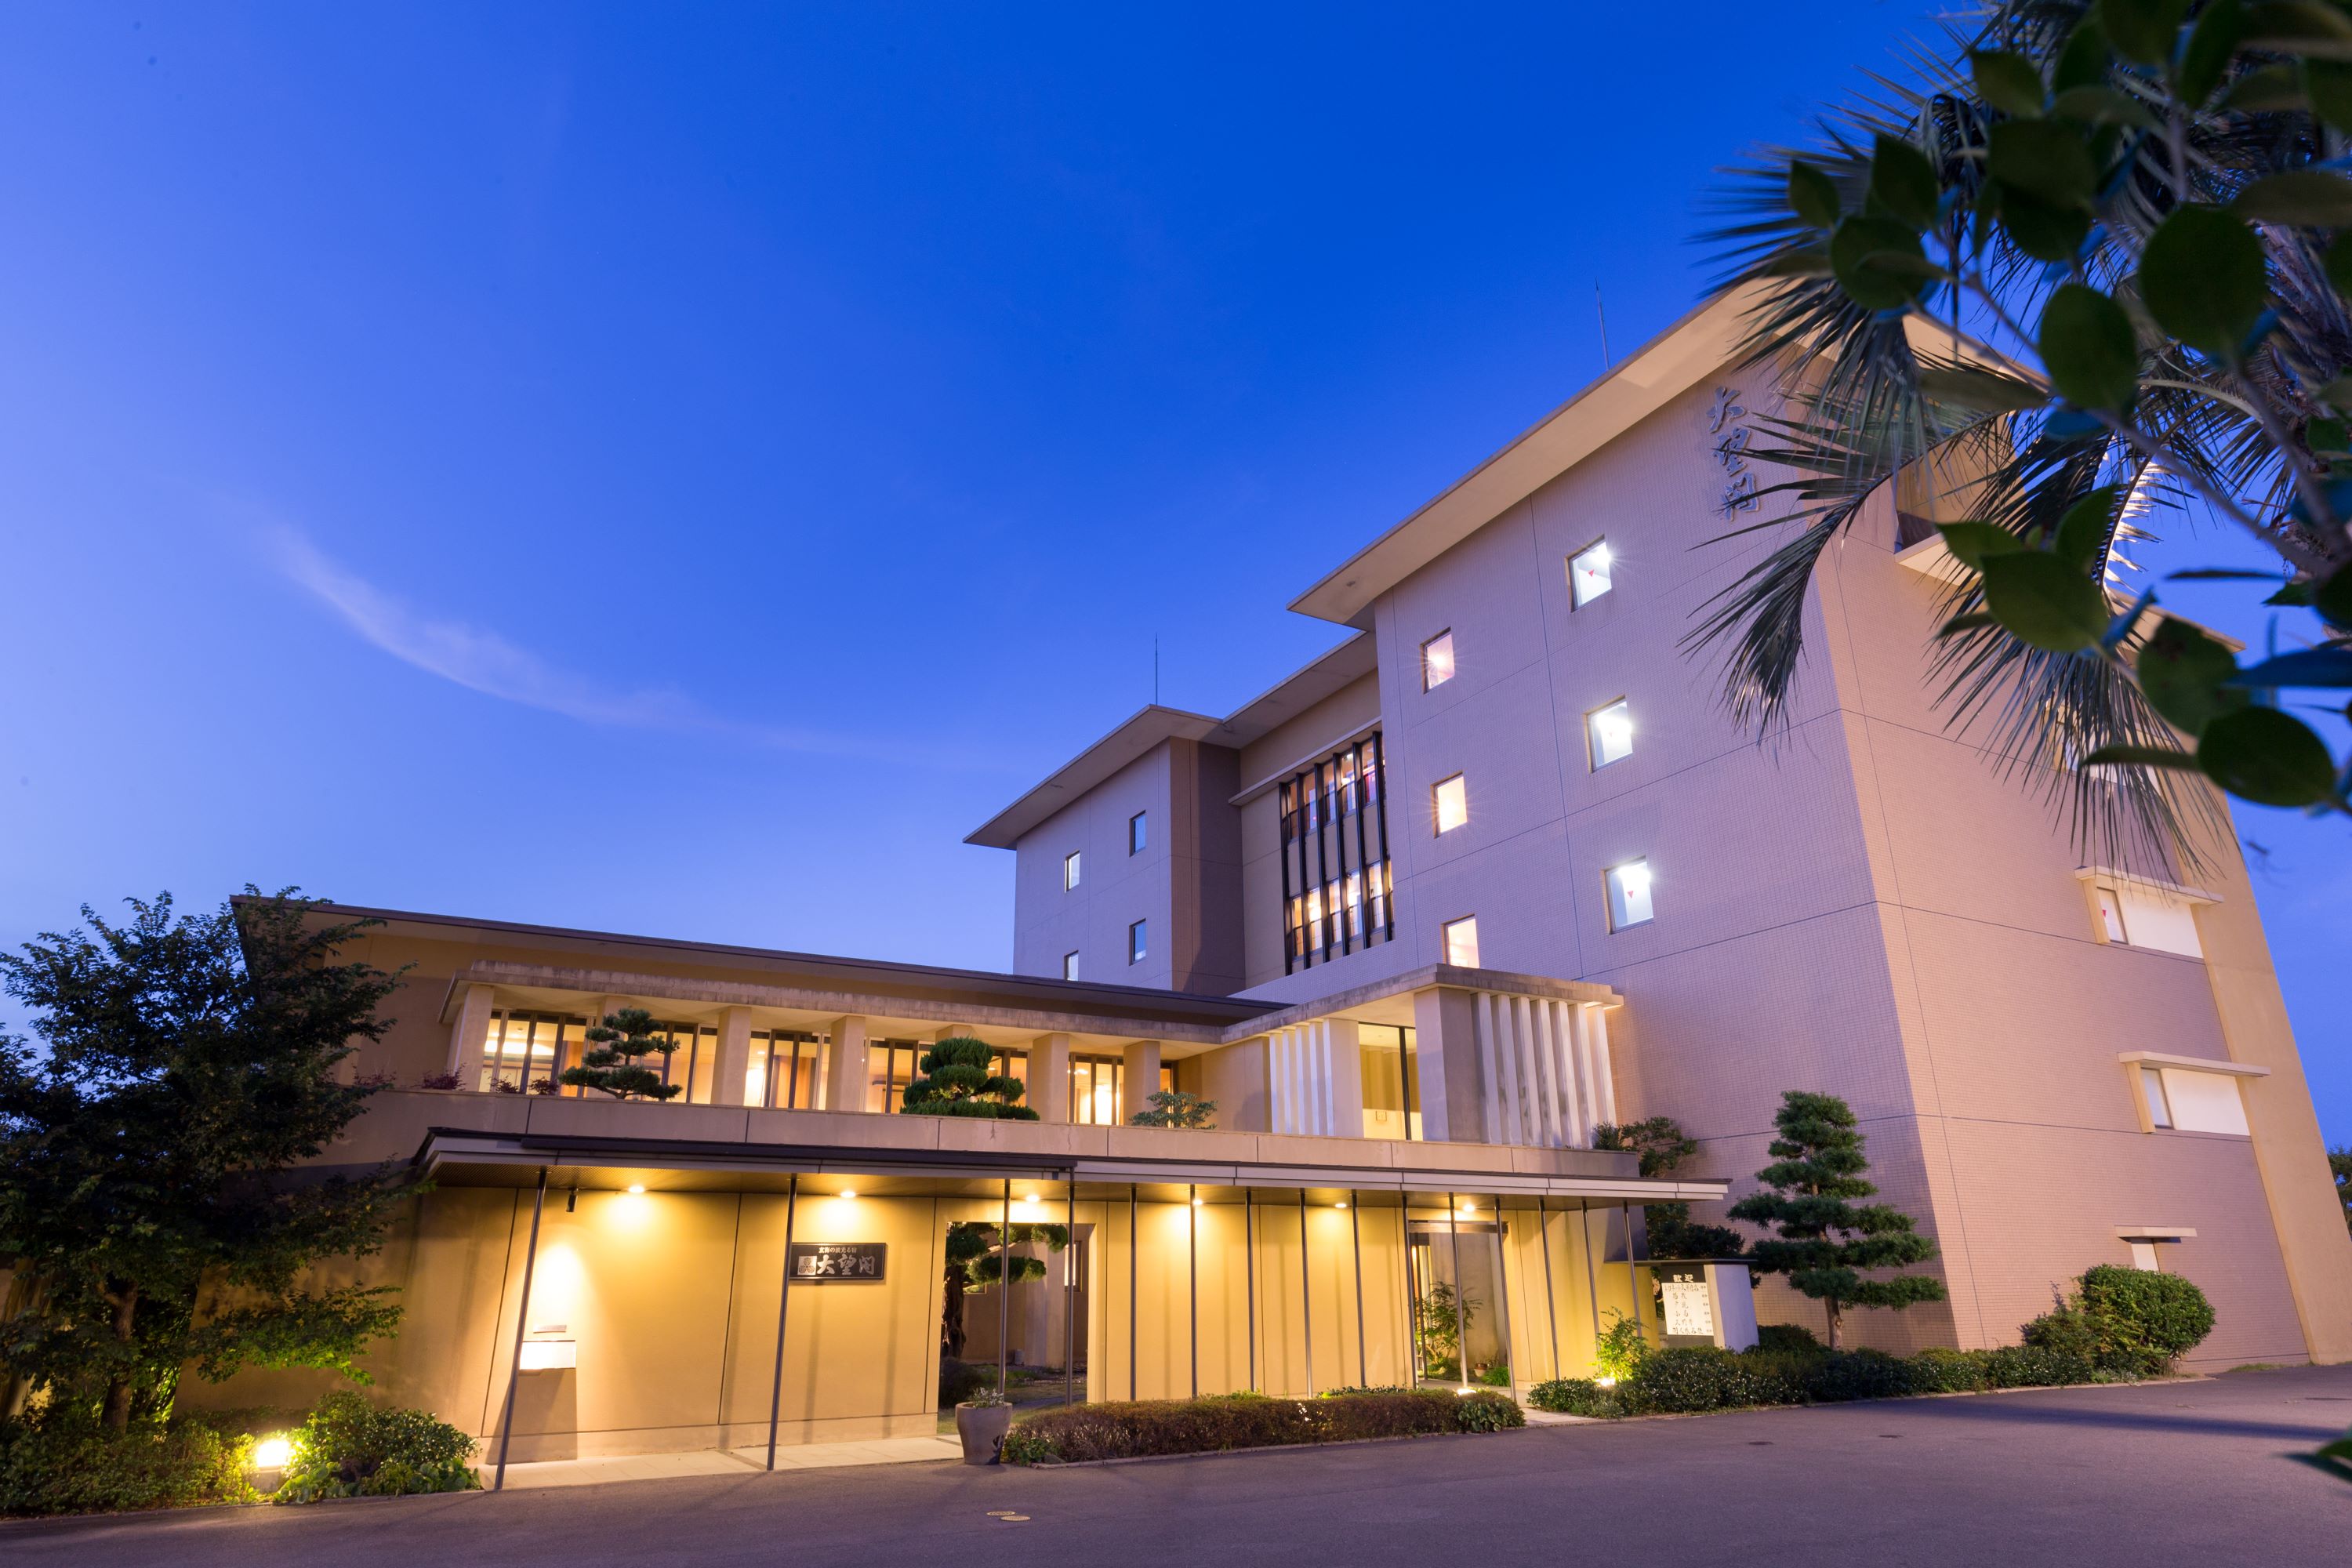 【九州旅行】熊本市から佐賀市内・呼子へ移動。途中のおすすめホテルを教えてください。